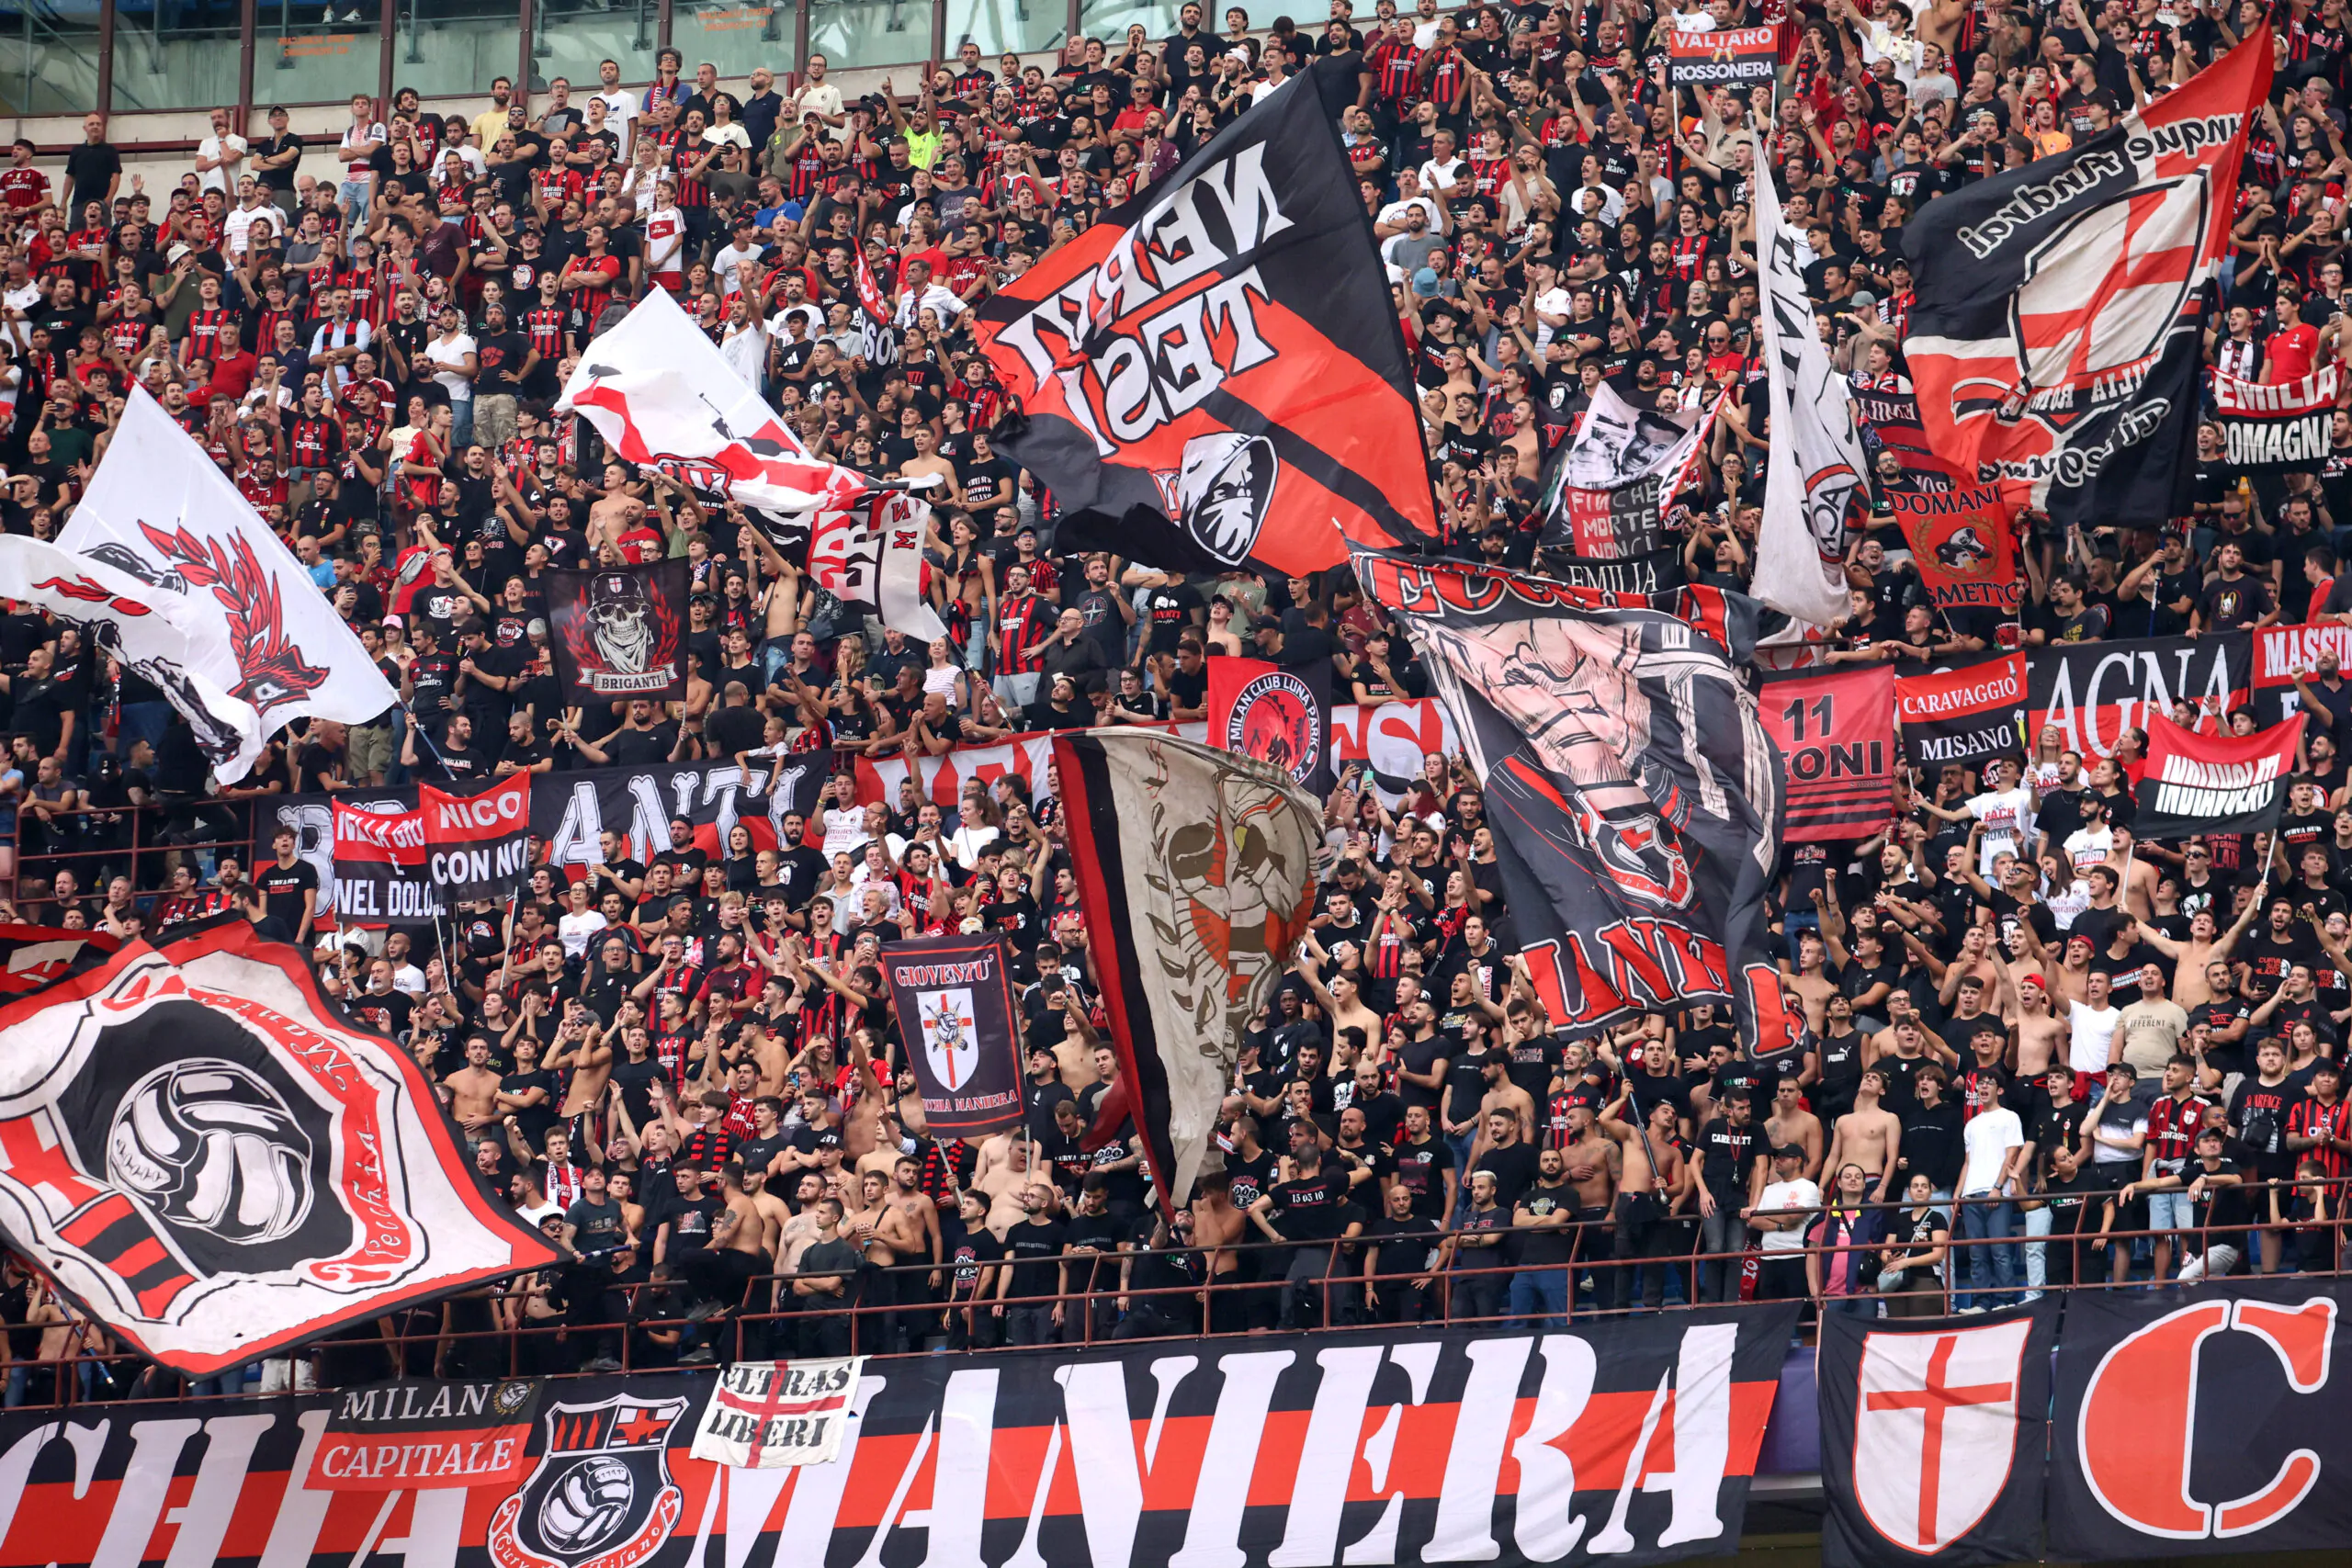 Protesta della Curva Sud in vista di Juventus-Milan: svelato il motivo